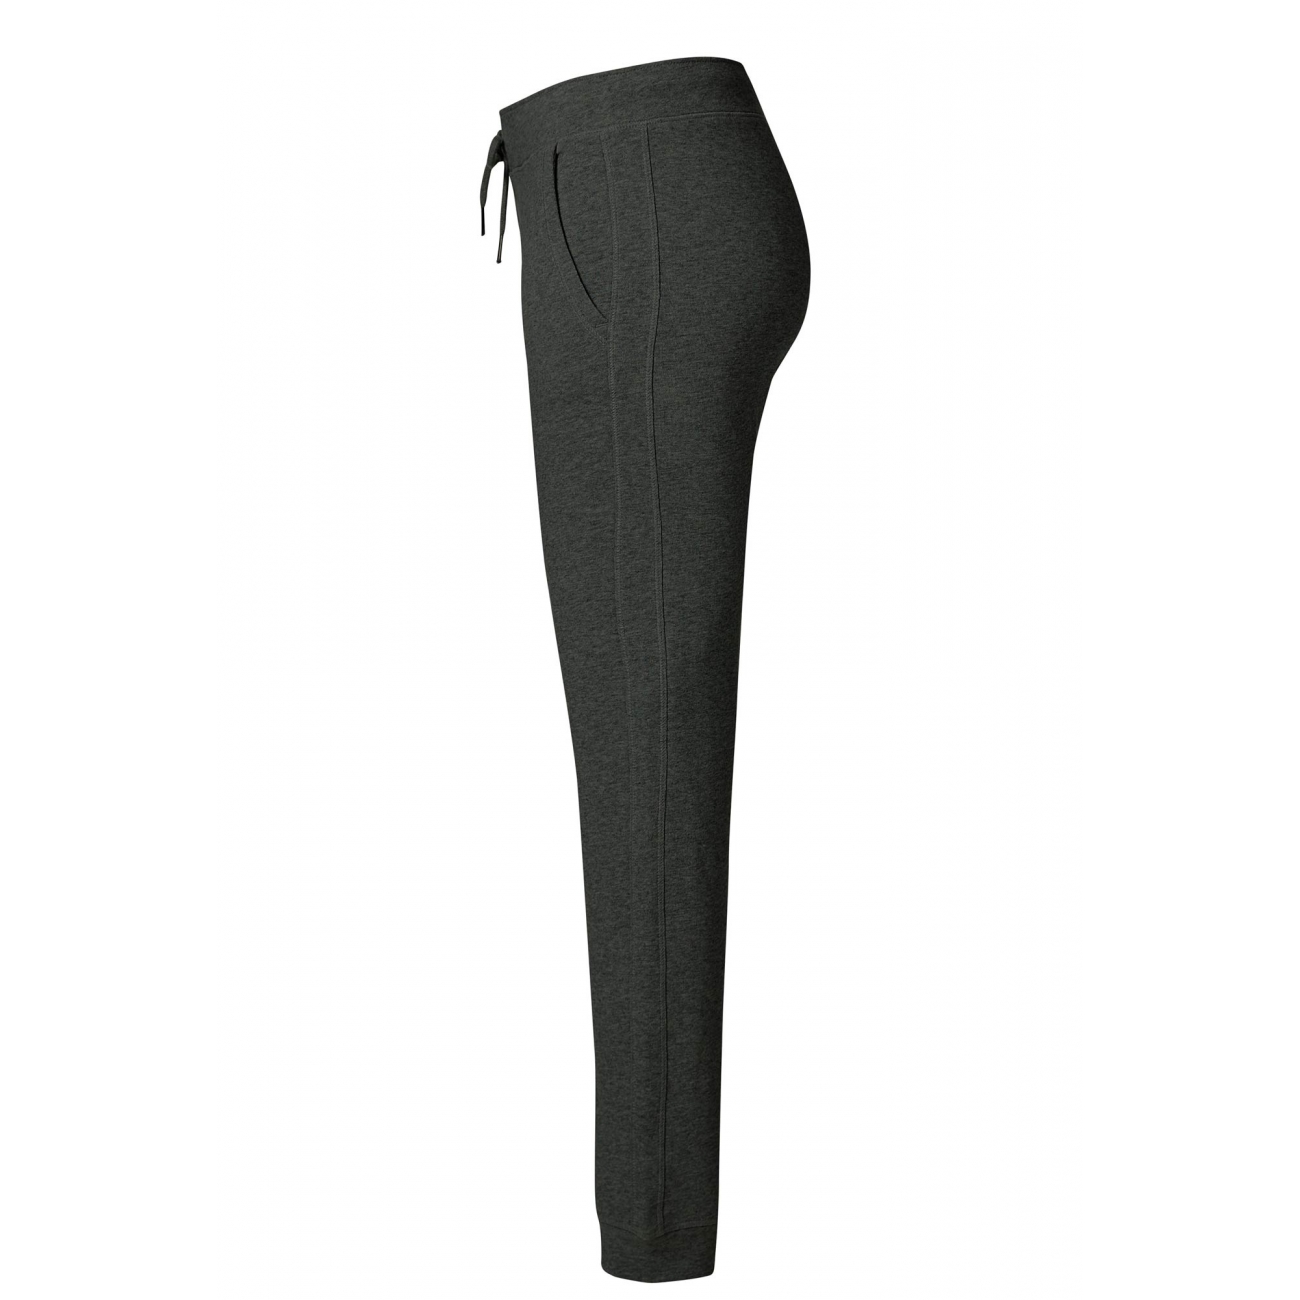 Pantalon femme coton bio loungewear vêtements éthiques ayama ivoire